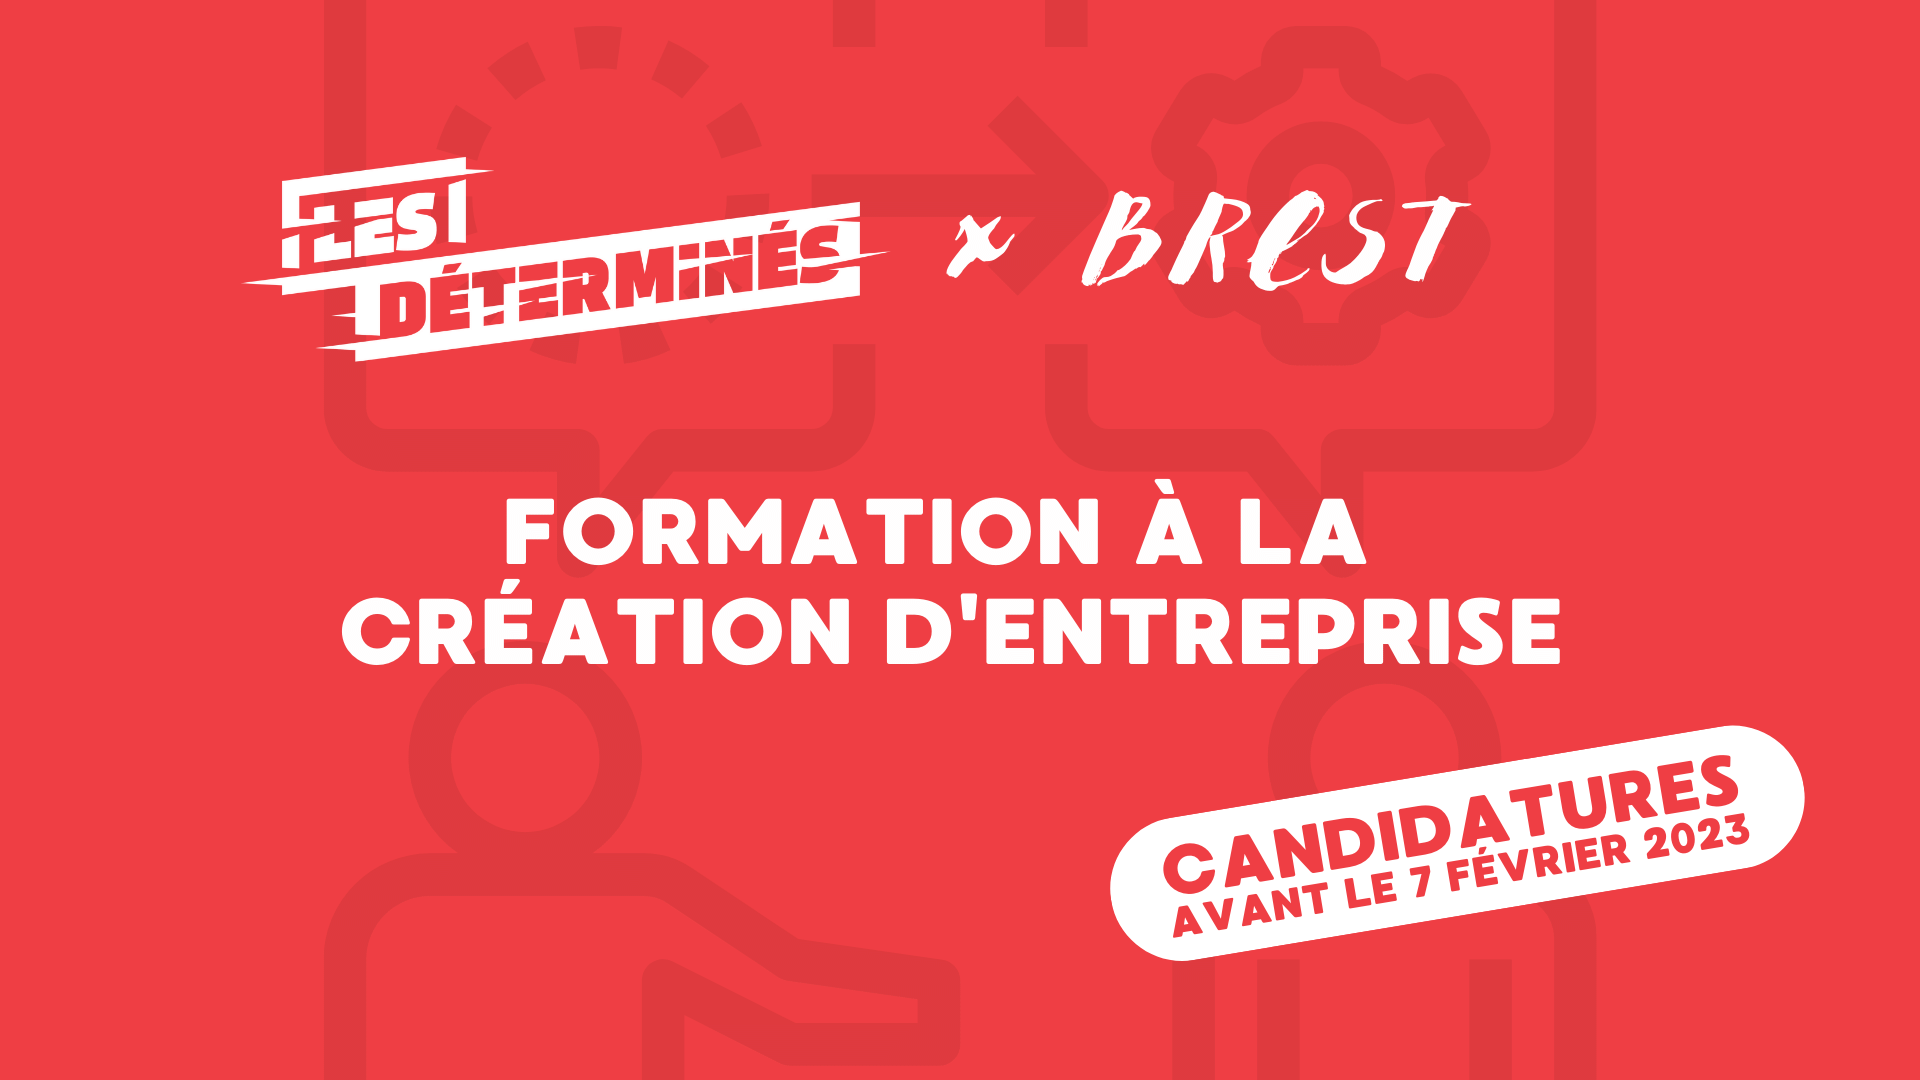 You are currently viewing Formation à la création d’entreprise – Les Déterminés